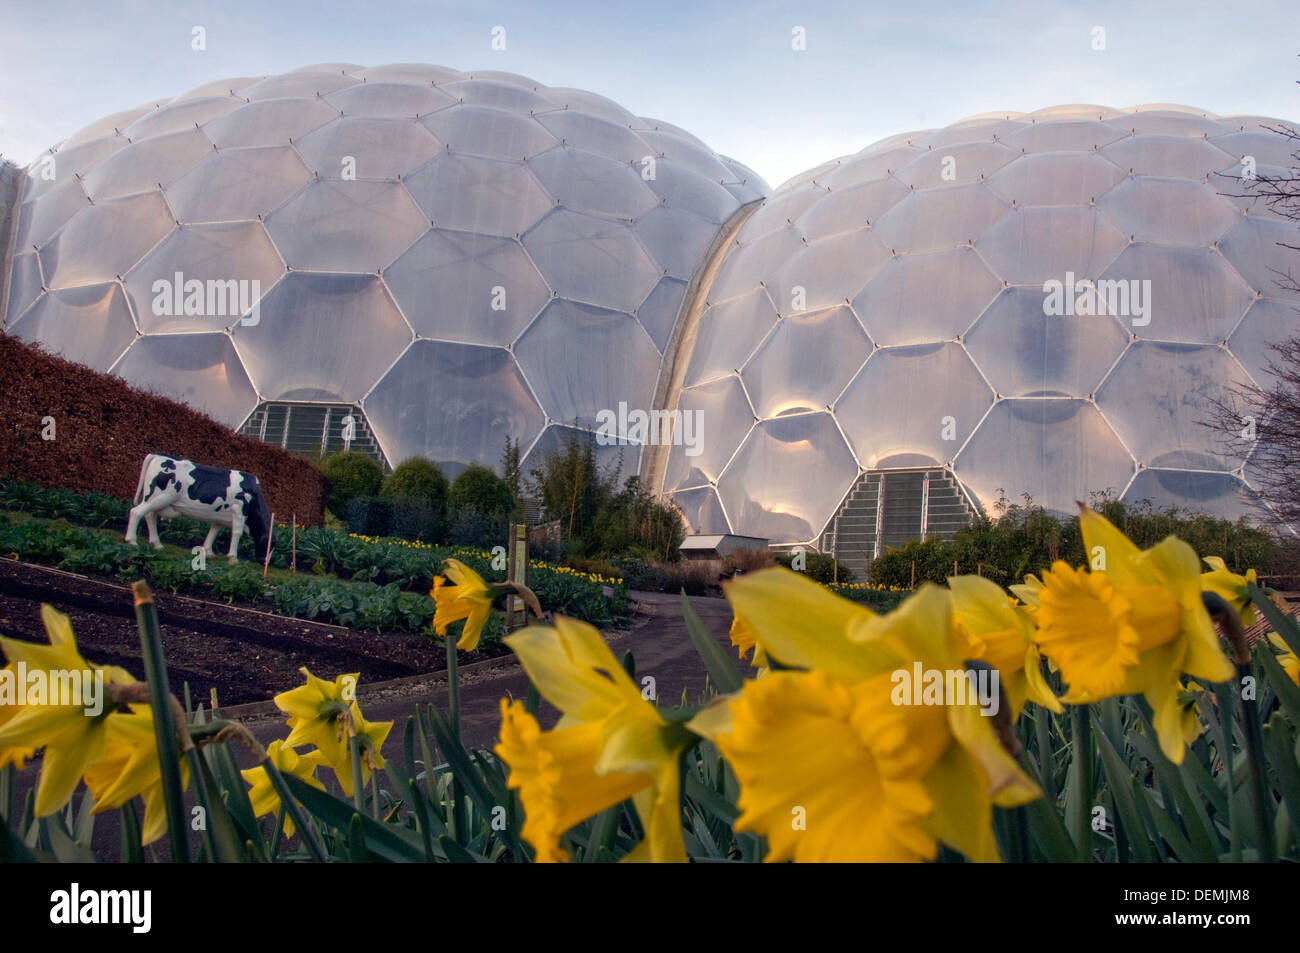 Eden Project,Cornwall,UK,une série de biodomes artificiel avec des collections de plantes,arbres,fleurs de partout dans le monde tropical inc. Banque D'Images